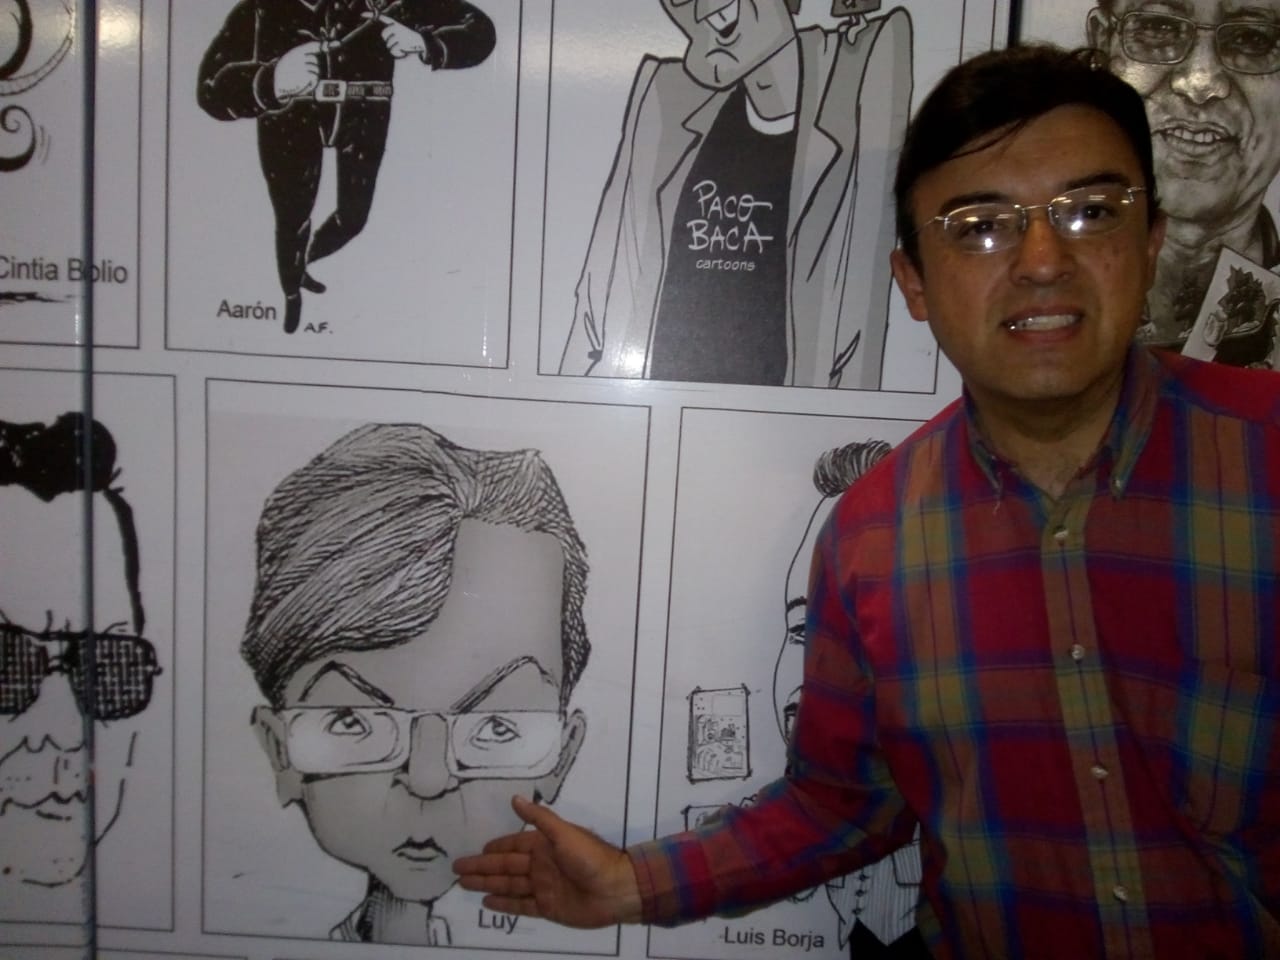 Agencia Mundial de Prensa otorgó Galardón de la Década como mejor caricaturista a “Luy”